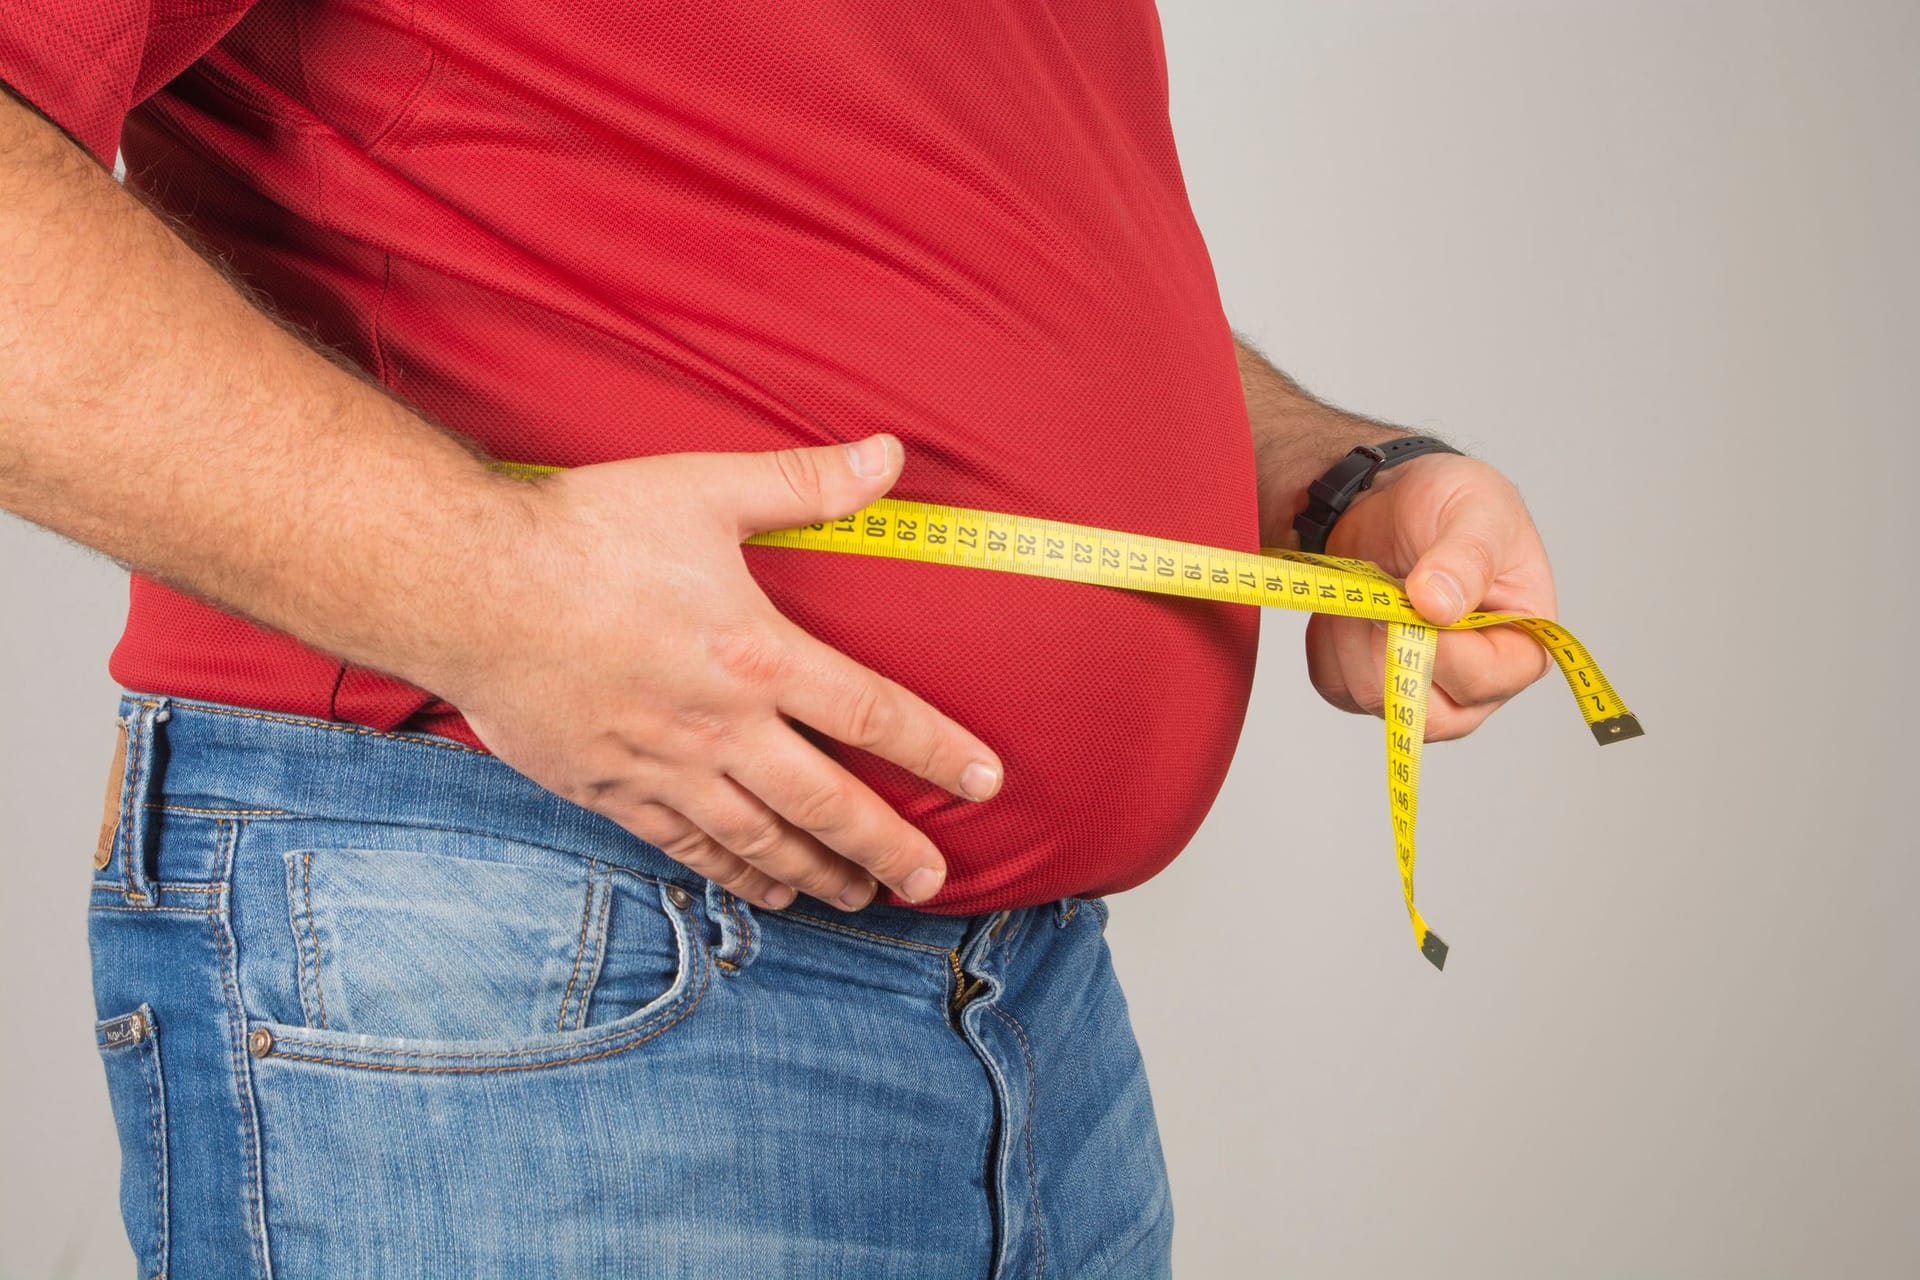 Eine Adipositas oder Fettleibigkeit beschreibt ein Übergewicht, bei dem der BMI (Body-Mass-Index) über einem Wert von 30 liegt. Mit einer erhöhten Fettleibigkeit steigt auch das Risiko für diverse Erkrankungen, wie Diabetes oder Herz-Kreislauf-Erkrankung. Ab einem BMI von 30 bis 35 wird von einer Adipositas ersten Grades gesprochen, zwischen 35 und 40 zweiten Grades und ab einem Wert von 40 dritten Grades.